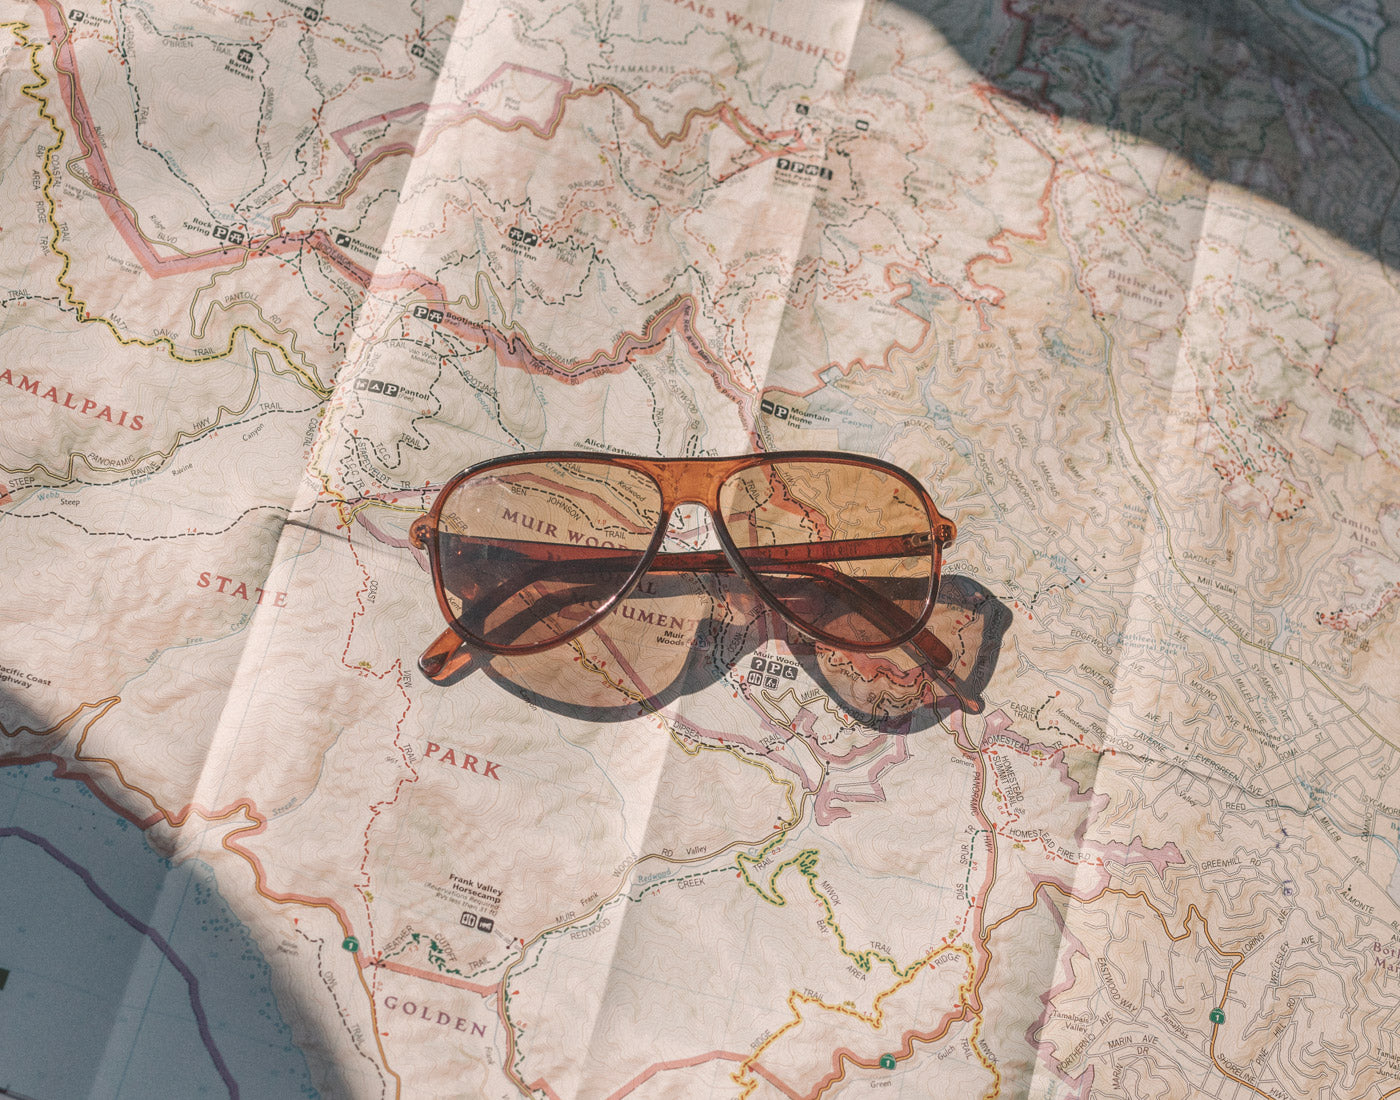 sunski foxtrot sunglasses laying on a map